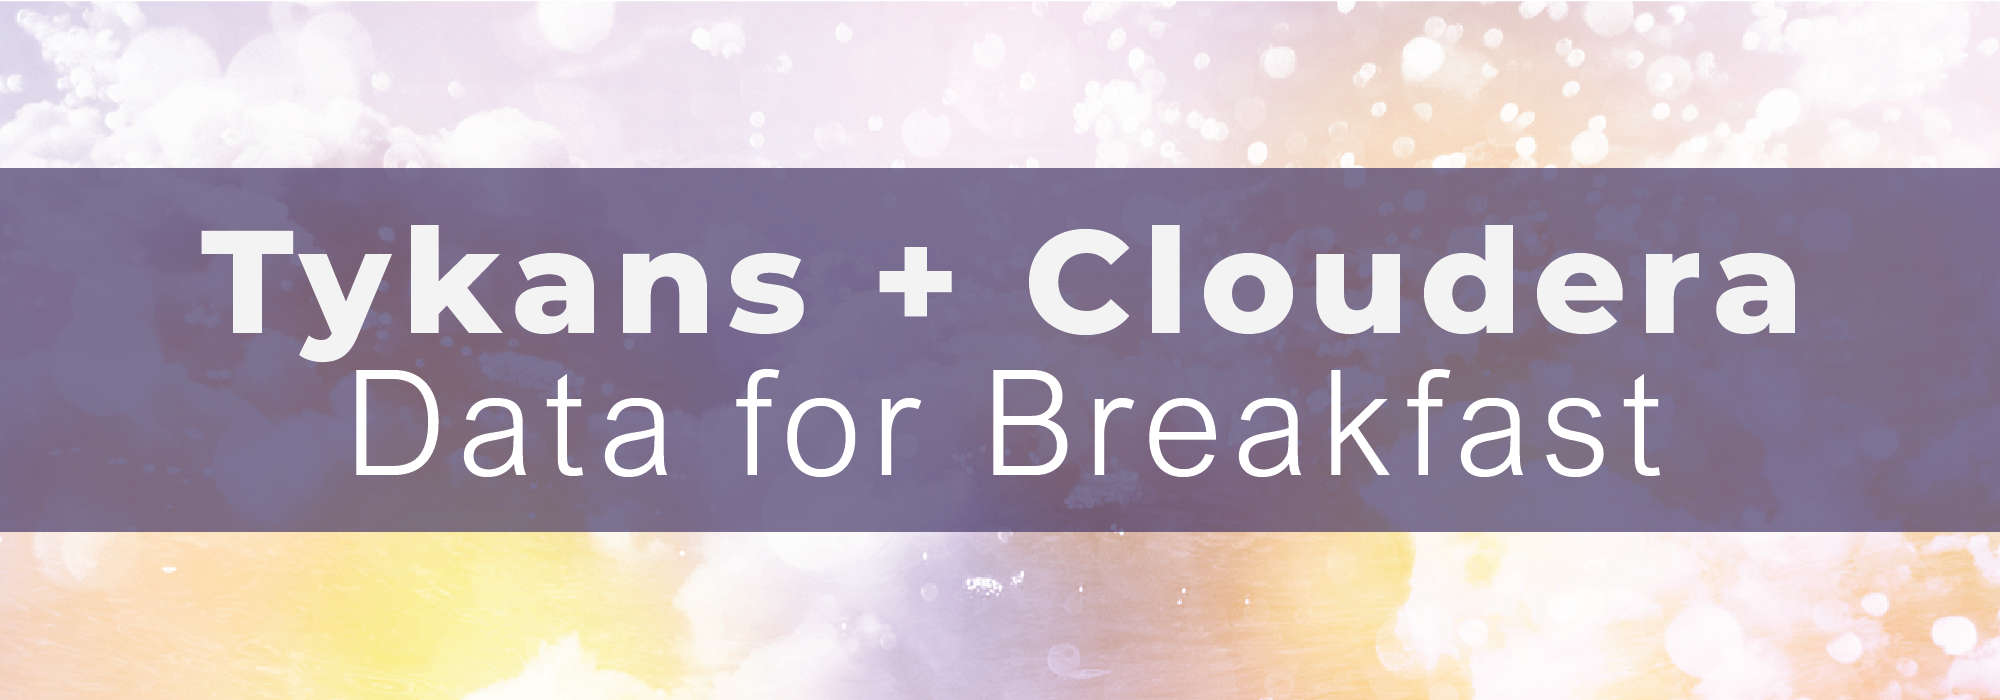 Tykans + Cloudera - Data for Breakfast